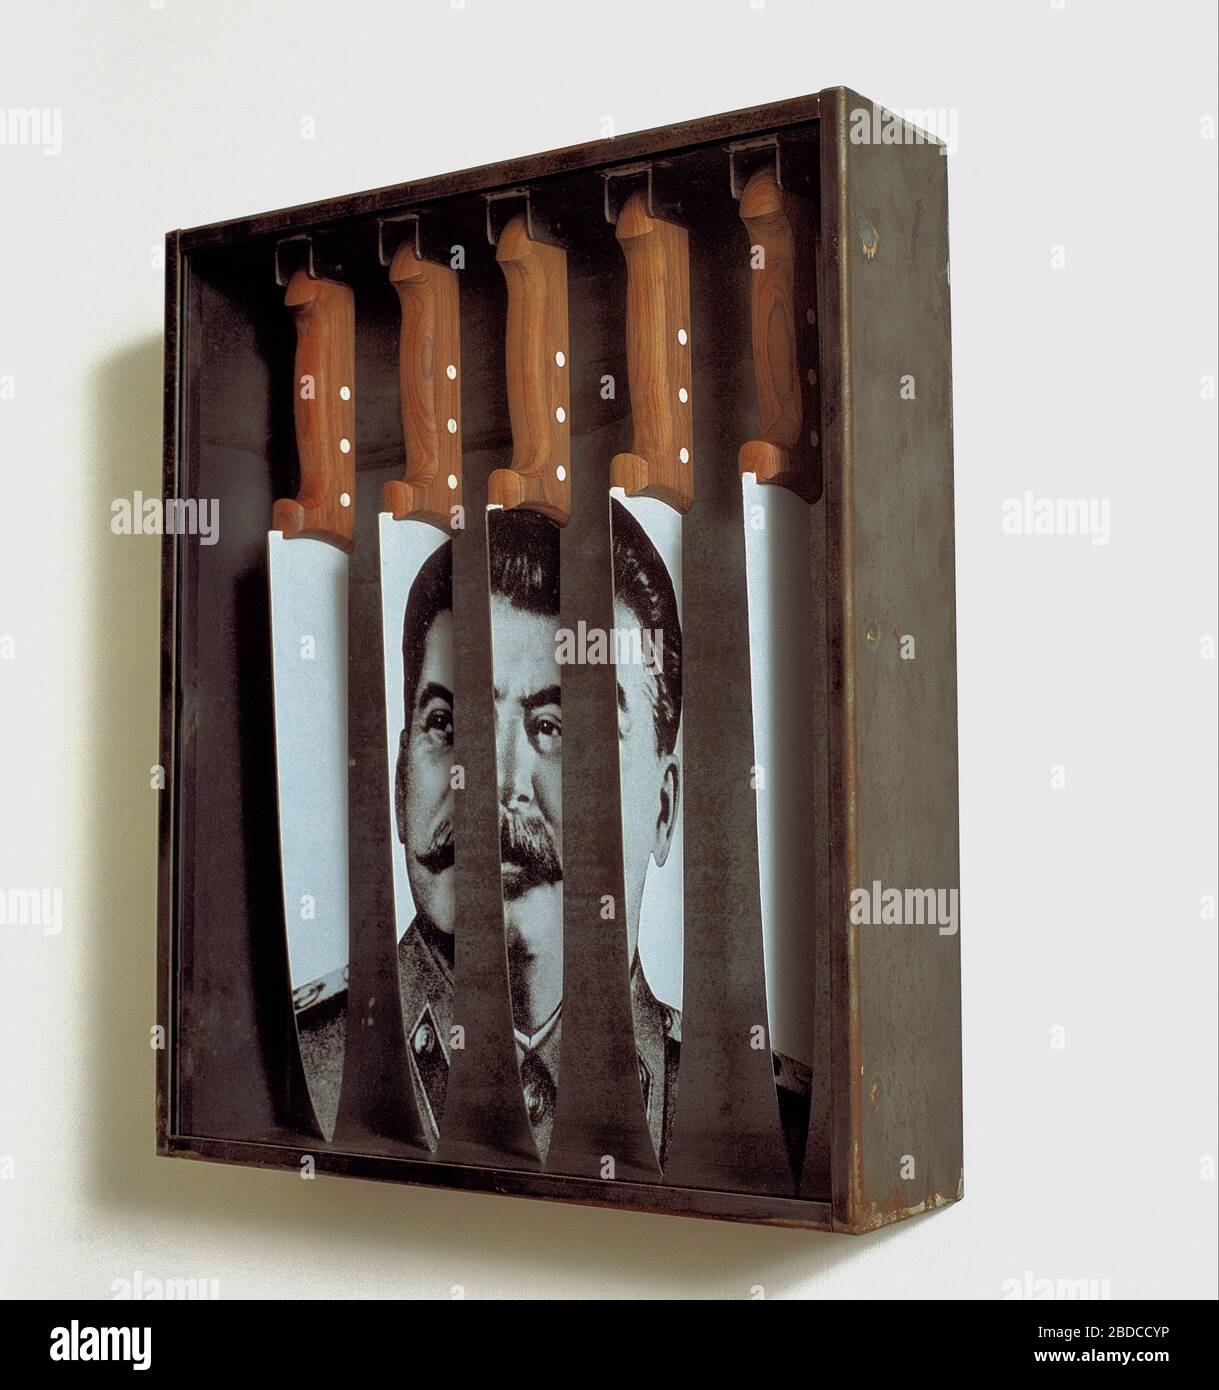 SENZA TITOLO (Ritratto di Stalin) artwork Jannis Kounellis at CAMUSAC Museum Contemporary Art Cassino Italy Stock Photo